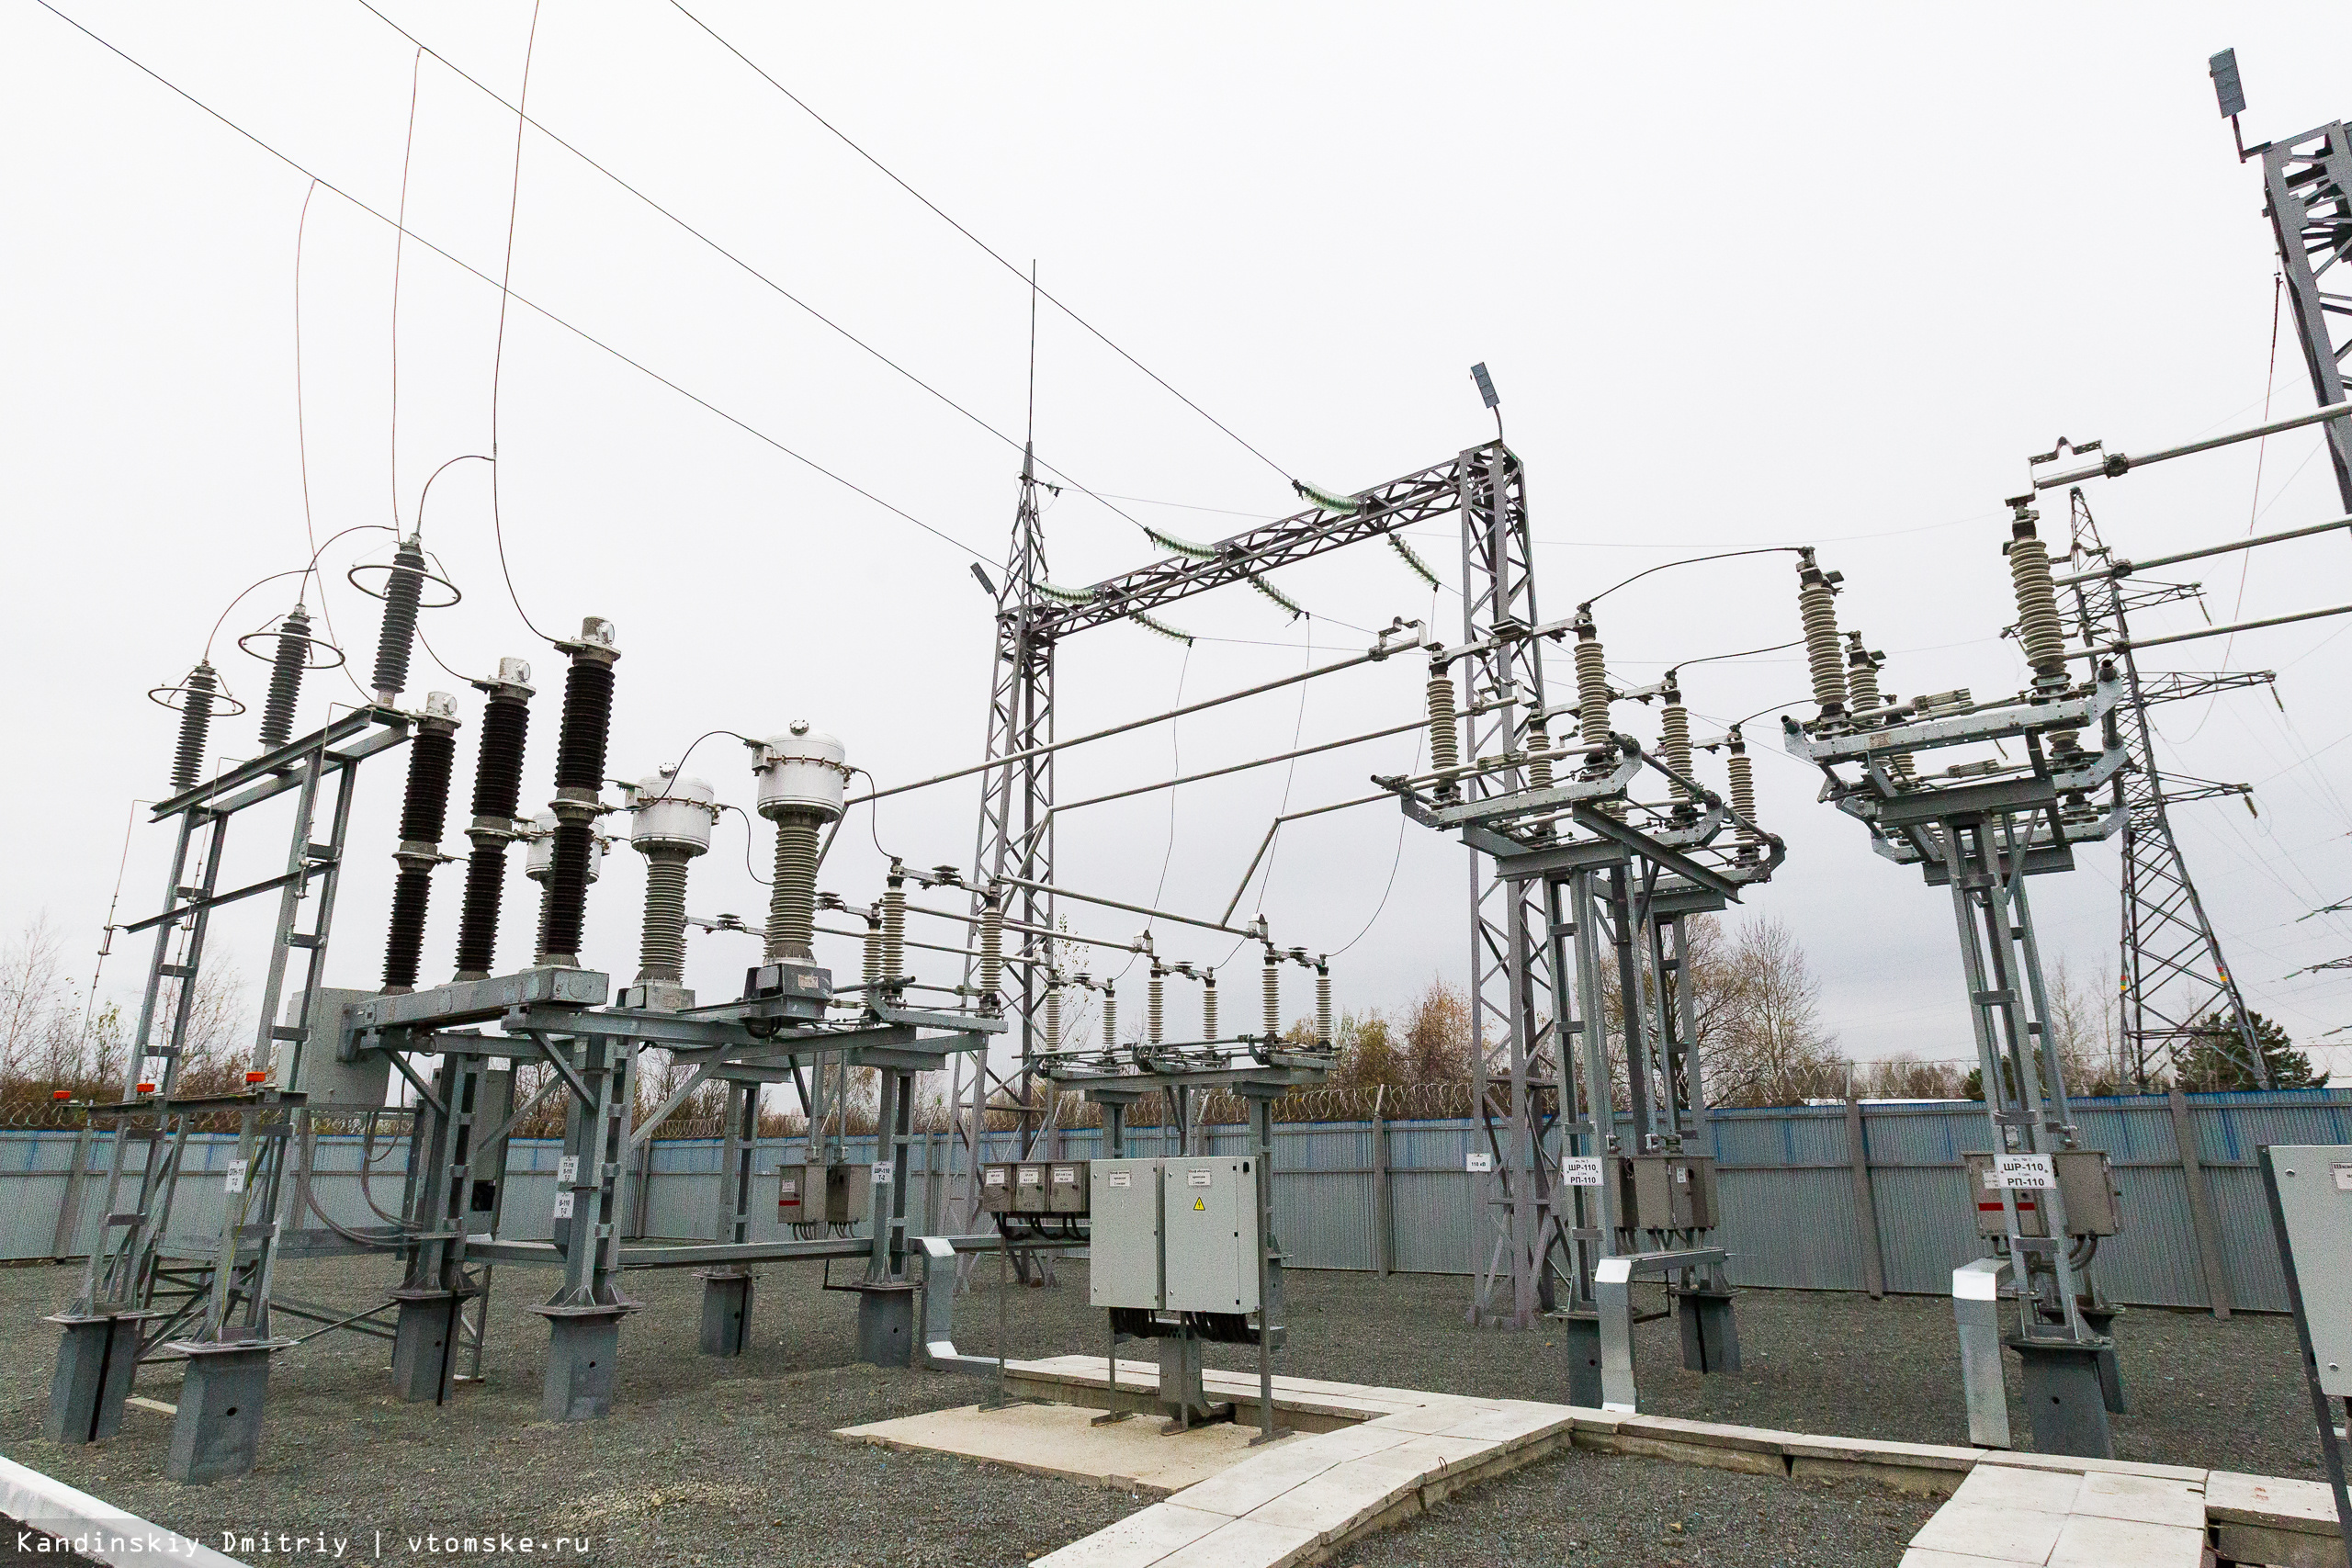 Армения потребляет электроэнергию внутреннего производства: на данный момент импорта нет